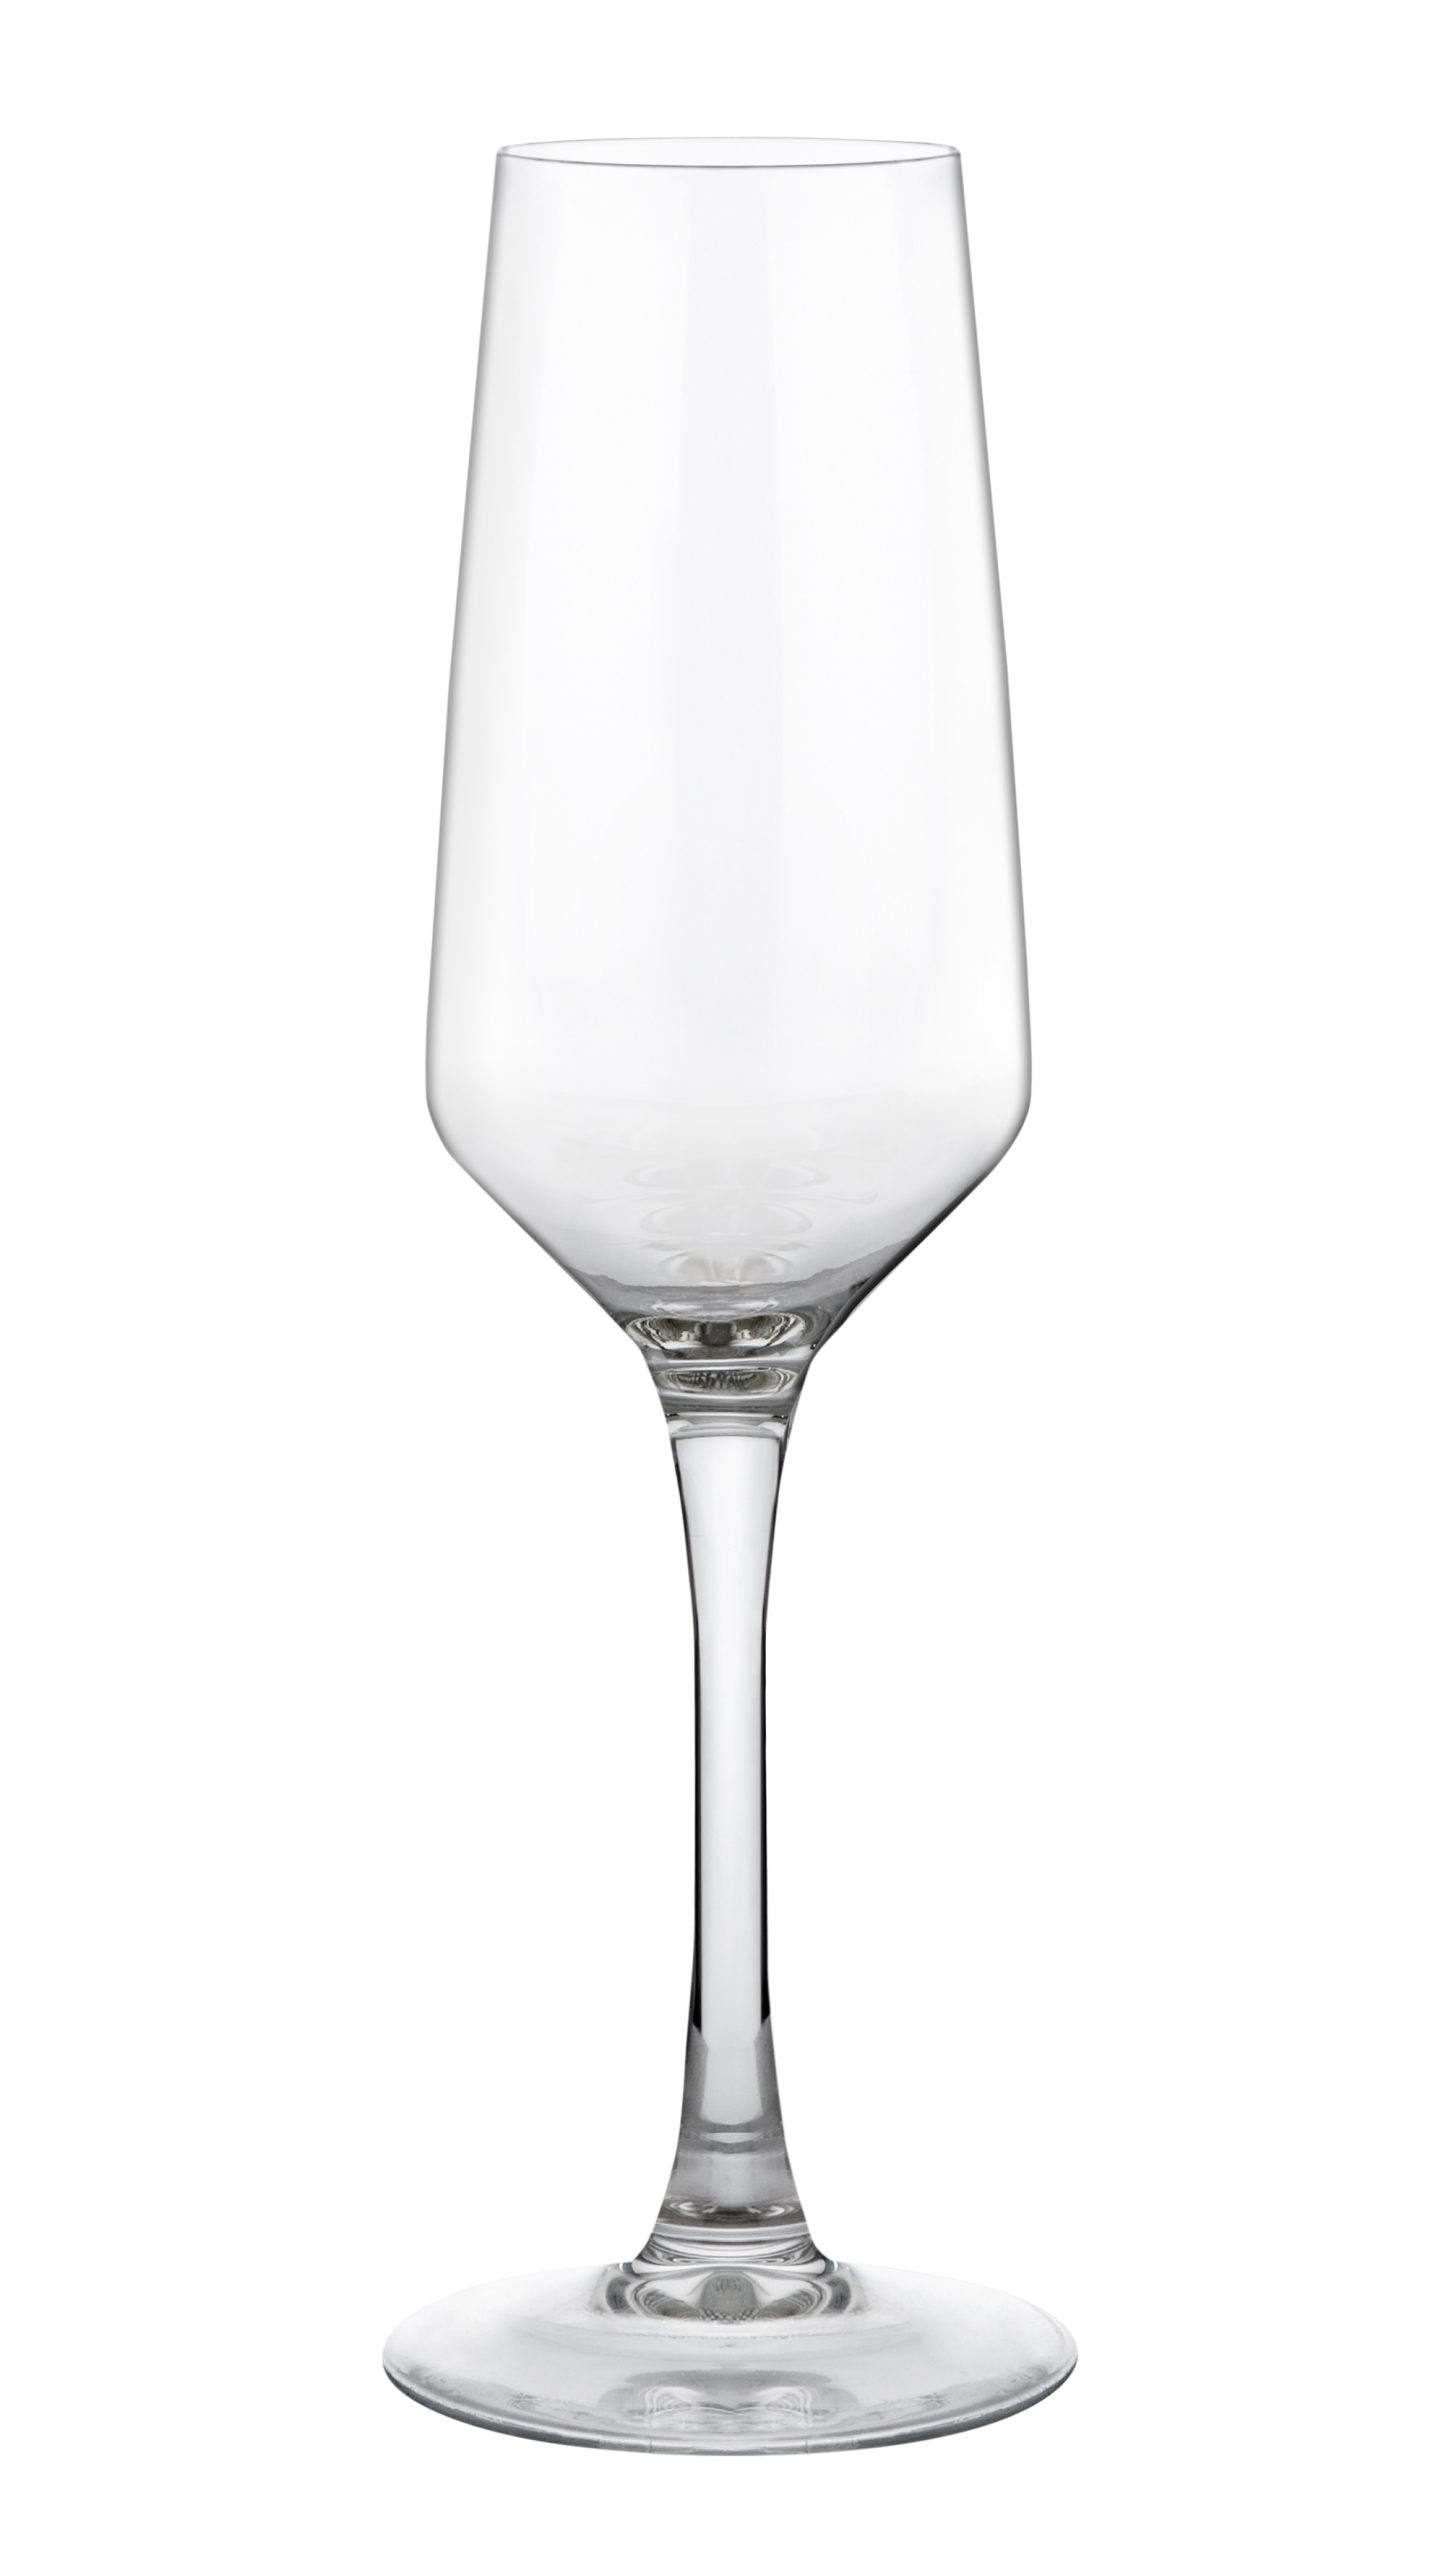 MENCIA CHARDONNAY 17,5cl  Champagne Glass HOSTELVIA VICRILA SPAIN ®